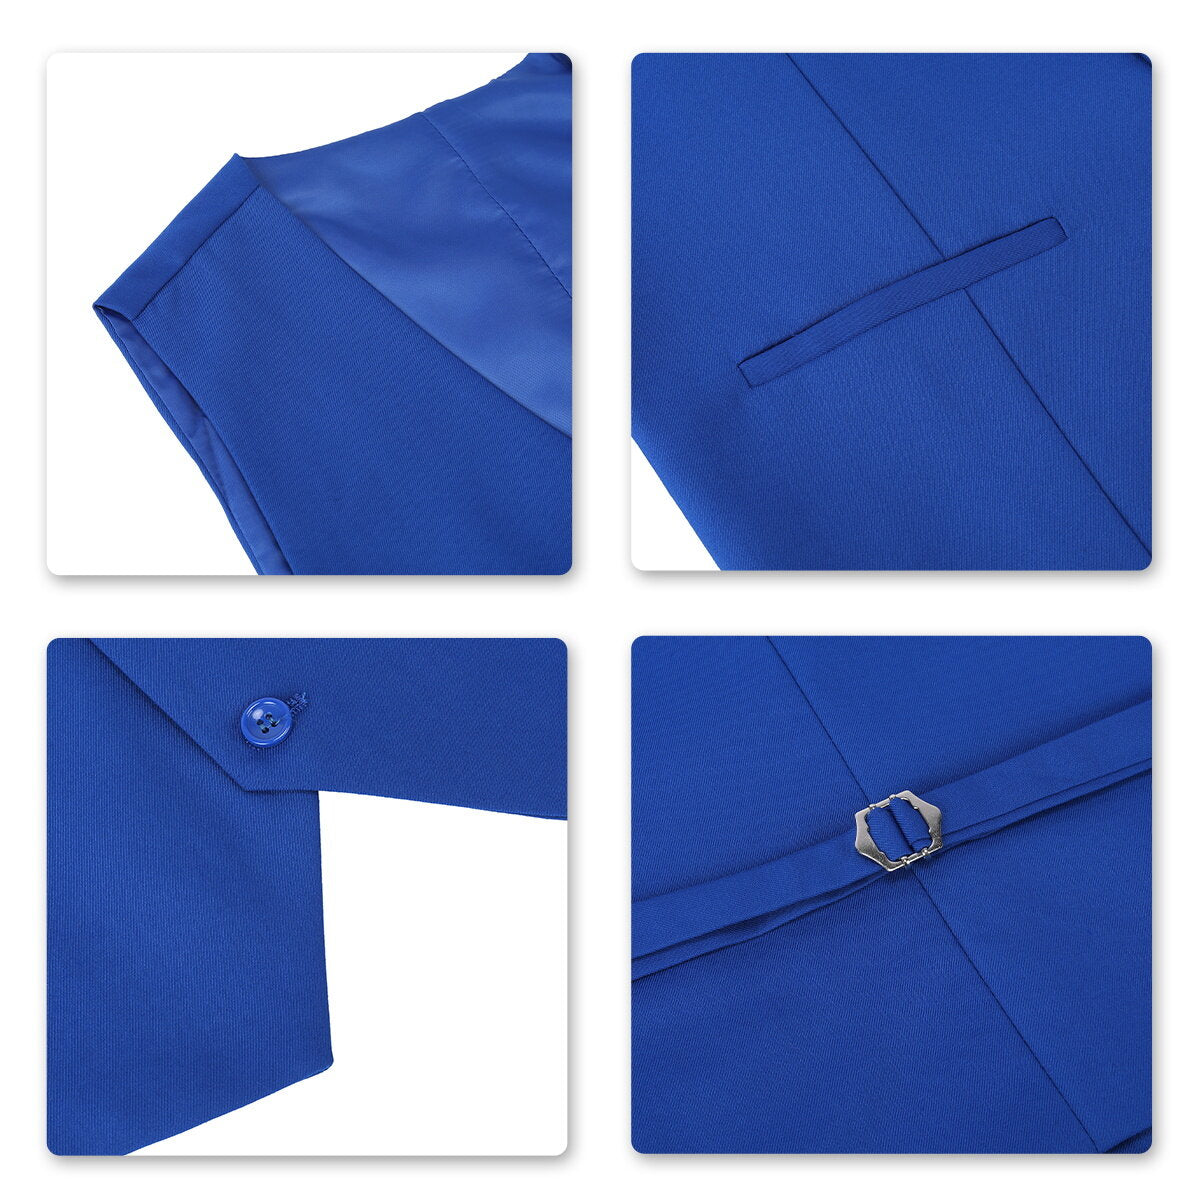 Mens 3 Piece Dress Suit Formal Casual Tux Vest Trousers Blue